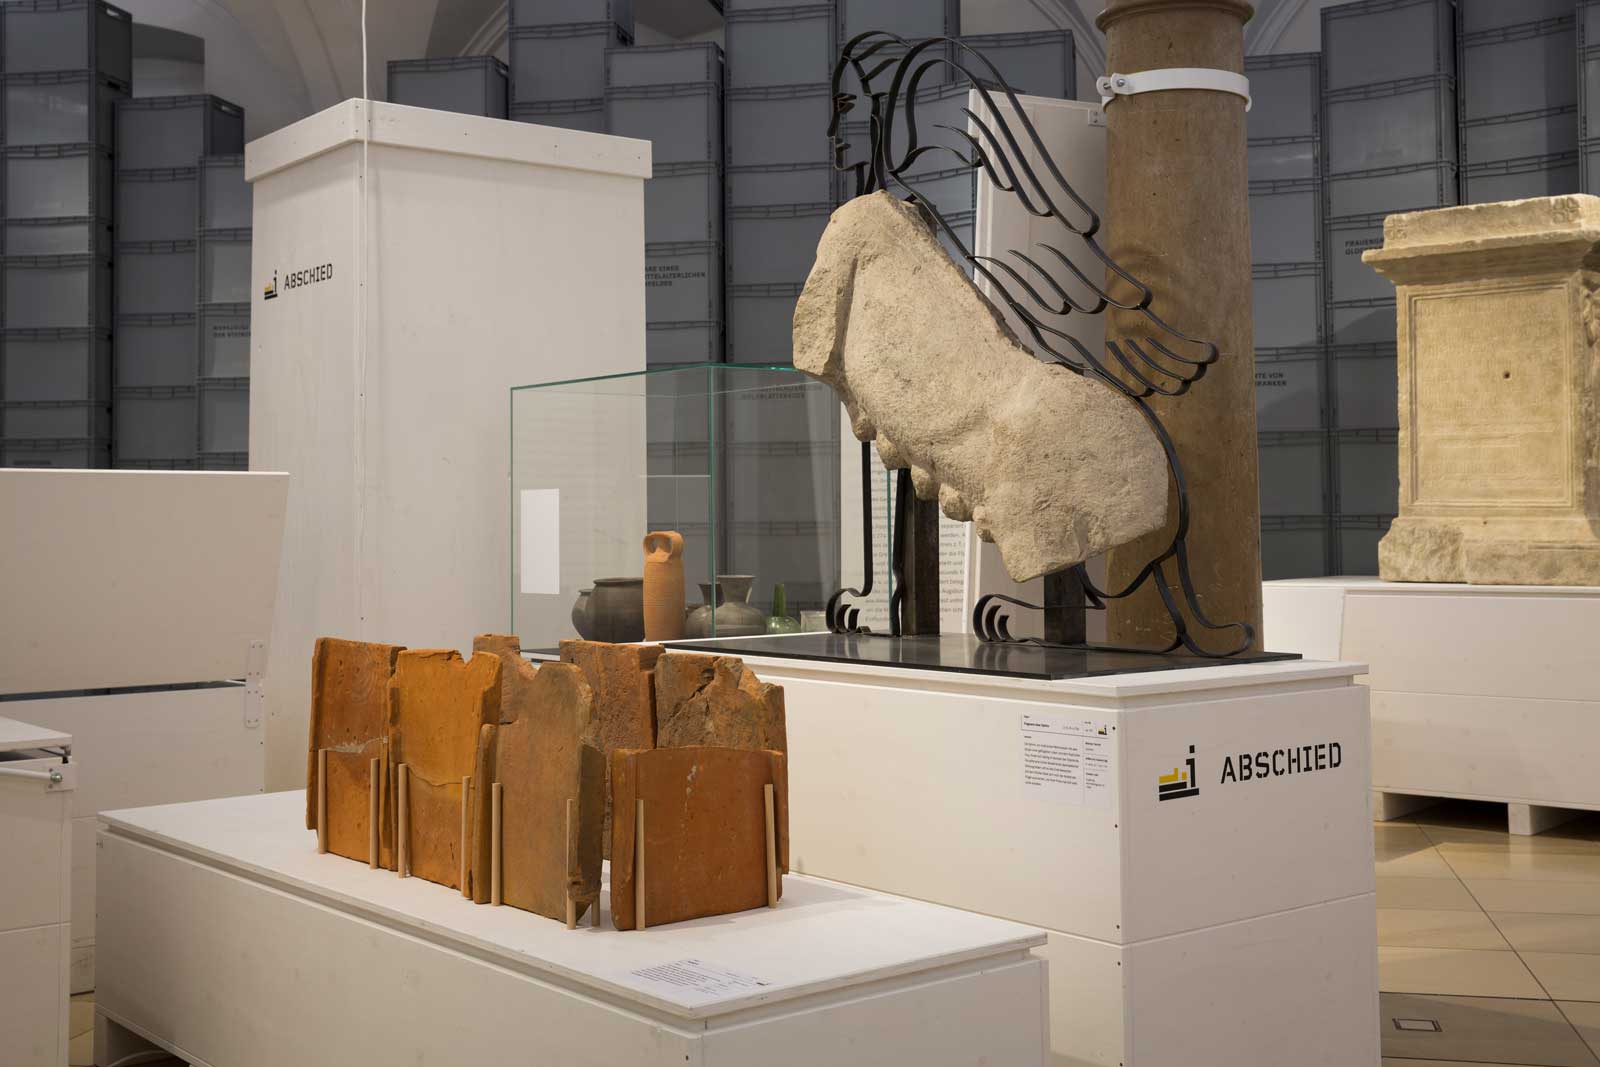 Das Referenzbild für Ausstellungsgestaltung aus der Interimsausstellung „Römerlager – Das Römische Augsburg in Kisten“ zeigt eine Exponatpräsentation in Vitrinen.